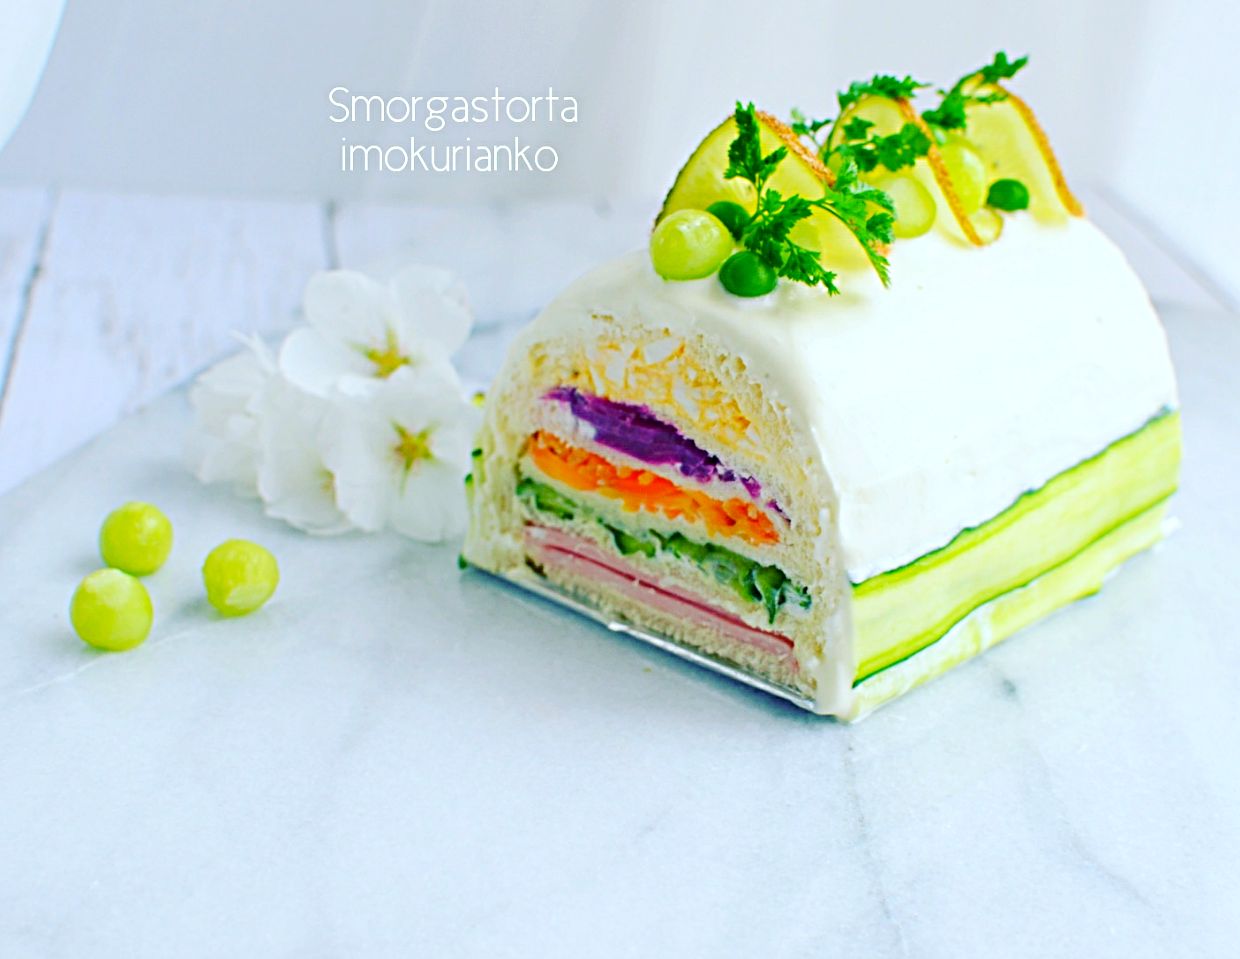 スウェーデンのサンドイッチスモーガストルタをアレンジケーキ仕立てのサンドイッチ Imokurianko Snapdish スナップディッシュ Id I1ctha